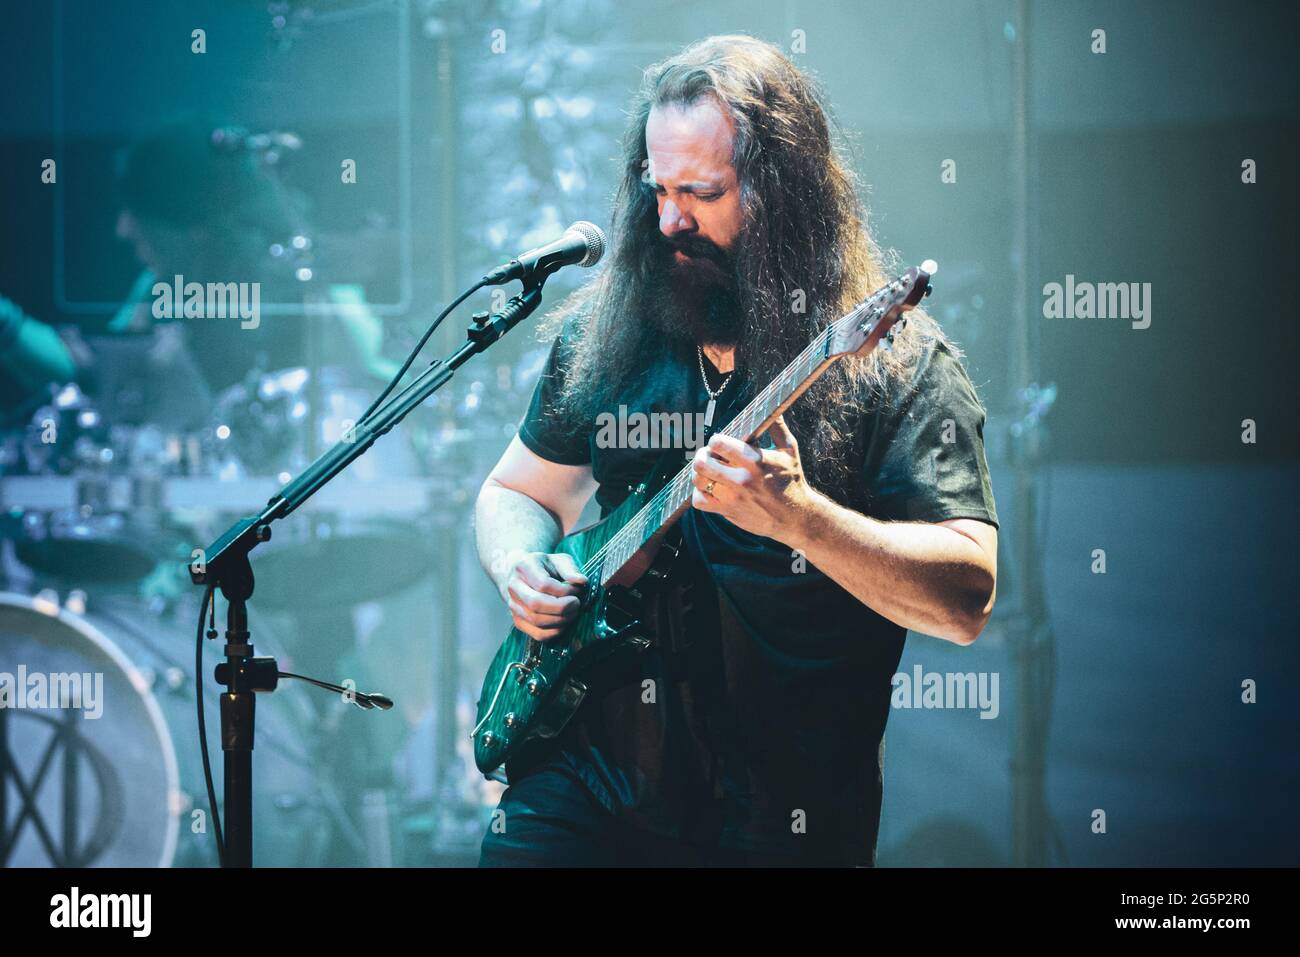 AUDITORIUM LINGOTTO, TORINO, ITALIA: John Petrucci, chitarrista della band progressive metal americana Dream Theater, ha suonato dal vivo sul palco per il tour "Images, Words and Beyond" di Torino. Foto Stock